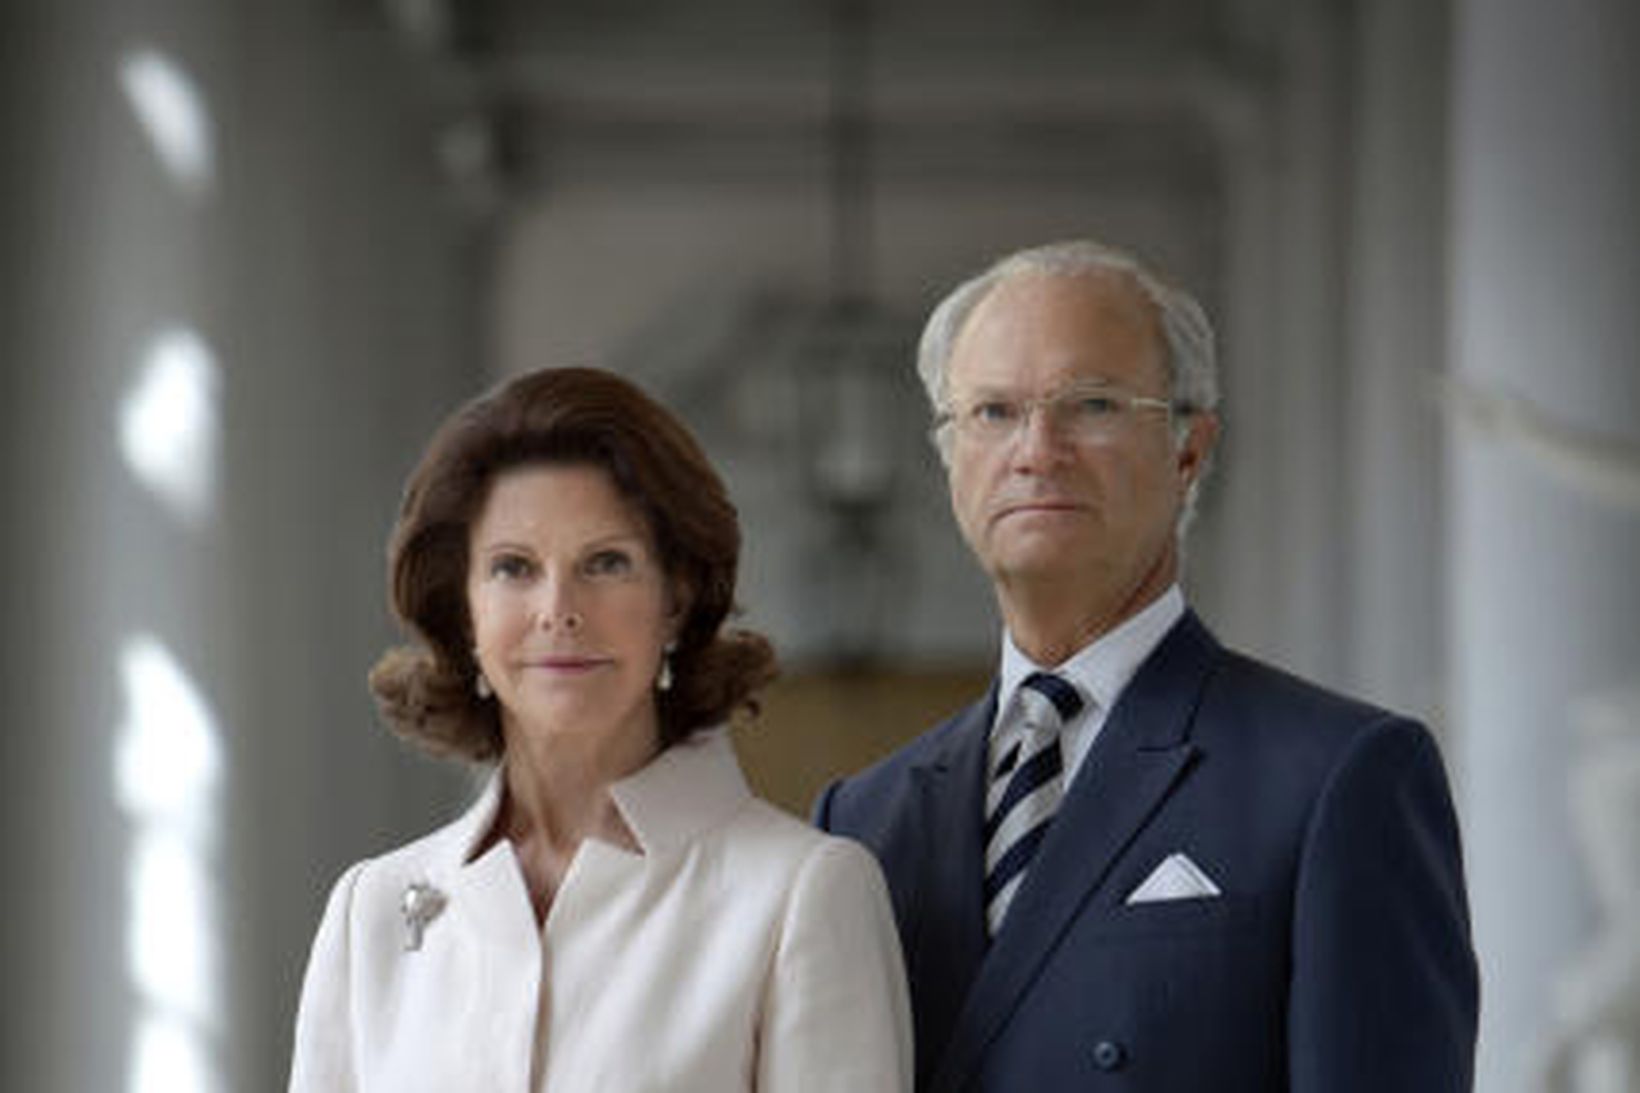 Sænsku konungshjónin, Silvía drottning og Karl Gústaf XVI konungur.